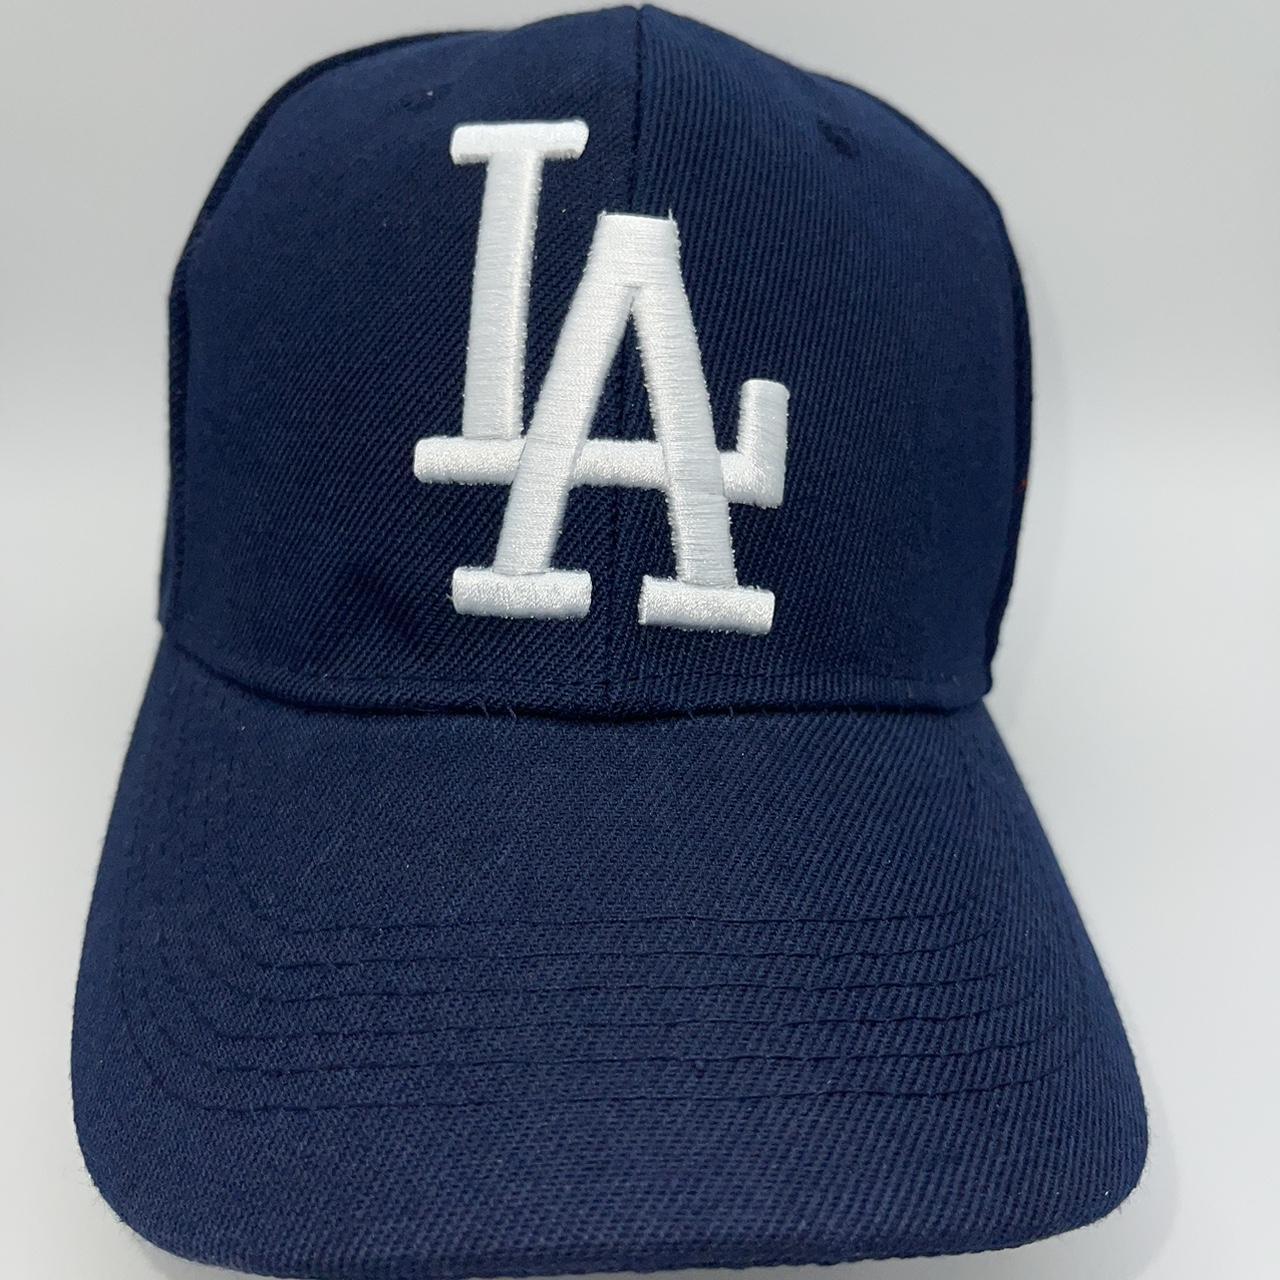 New L.A Dodgers Baseball Hat For Men Adjustable - Depop